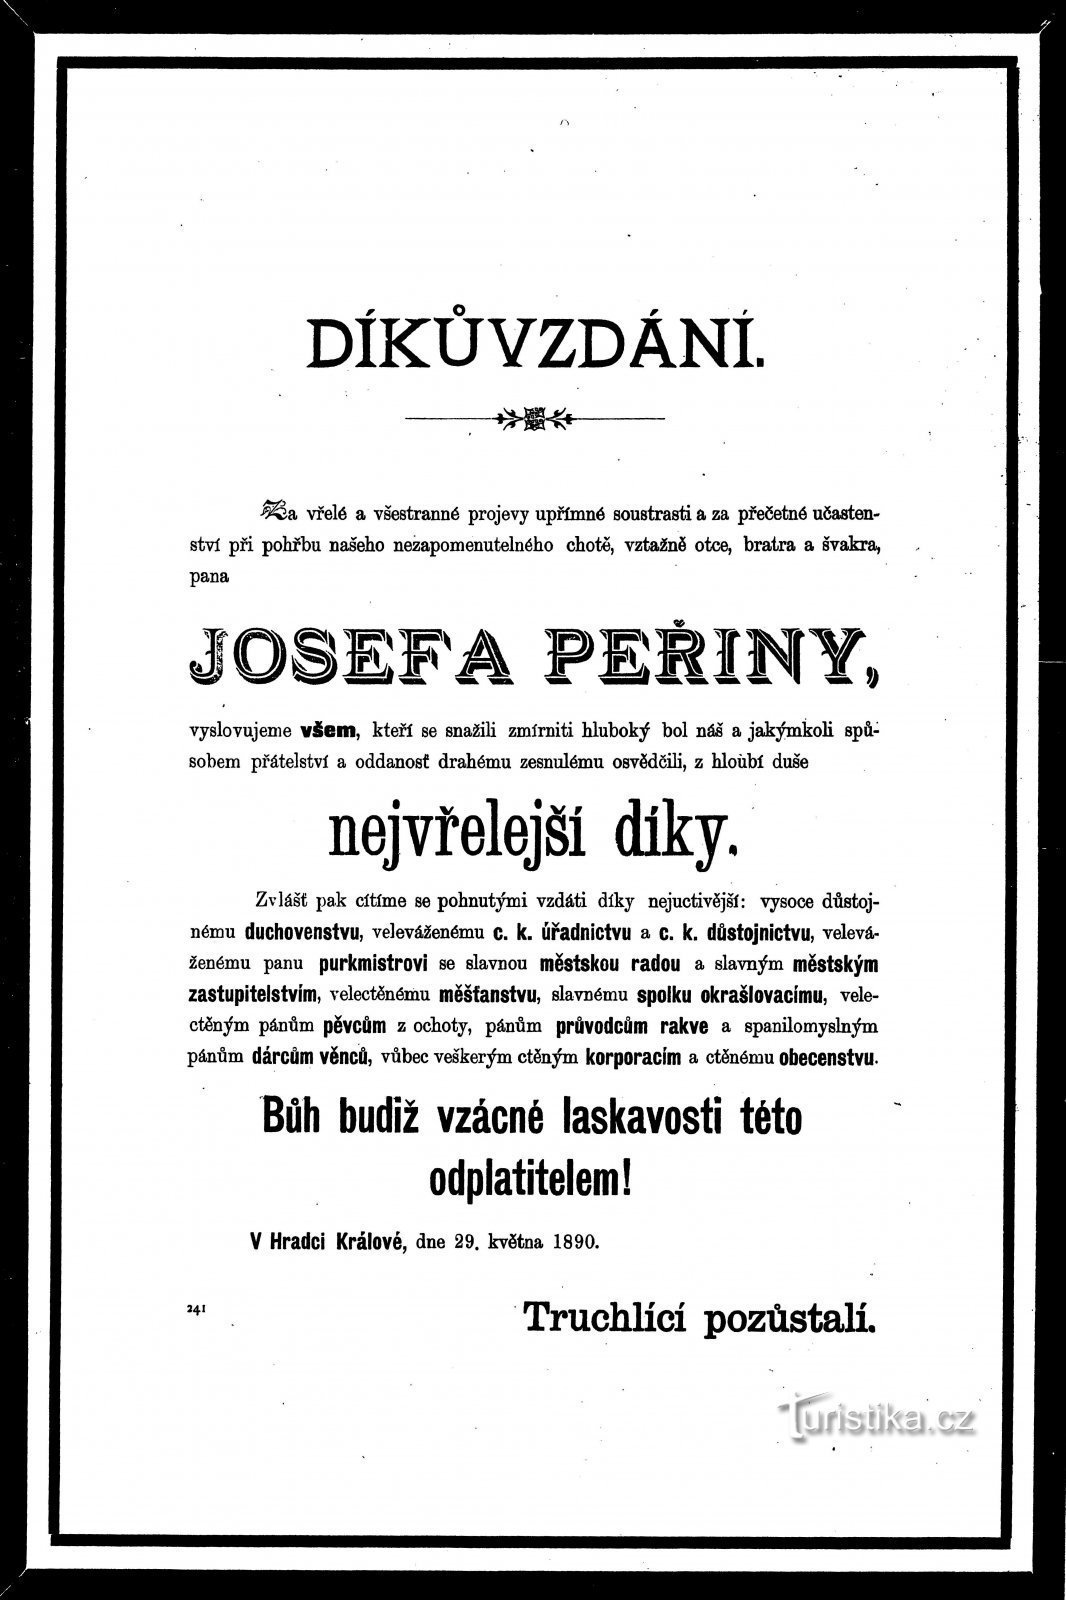 Дякуємо за участь у похоронах Йозефа Пержини з 1890 року